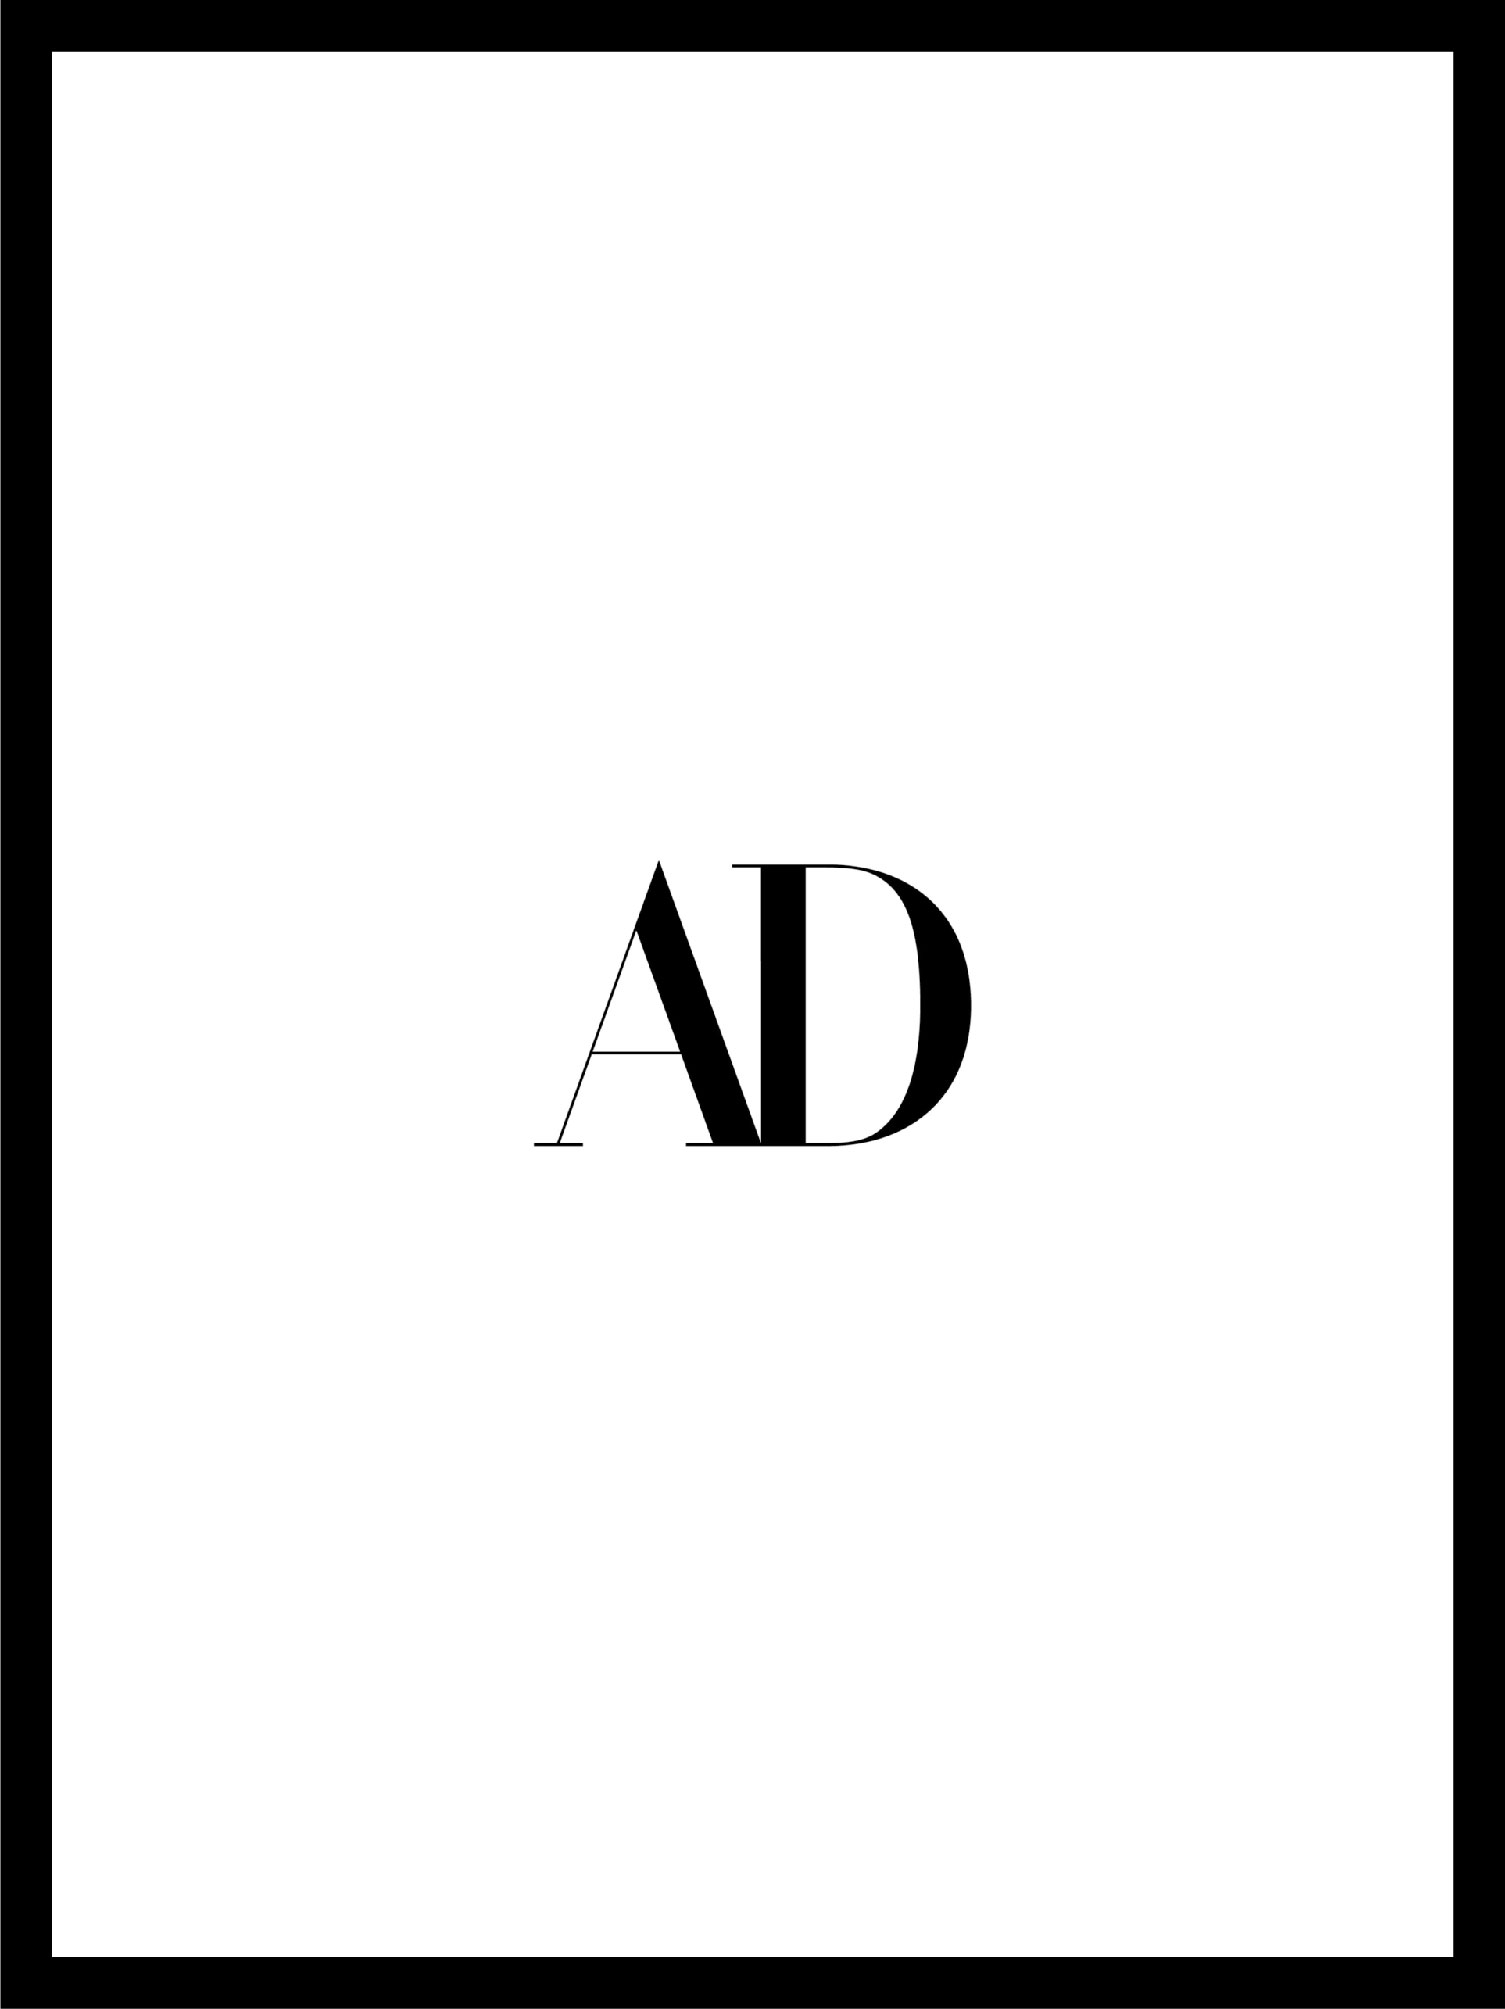 Couverture du magazine AD et logo